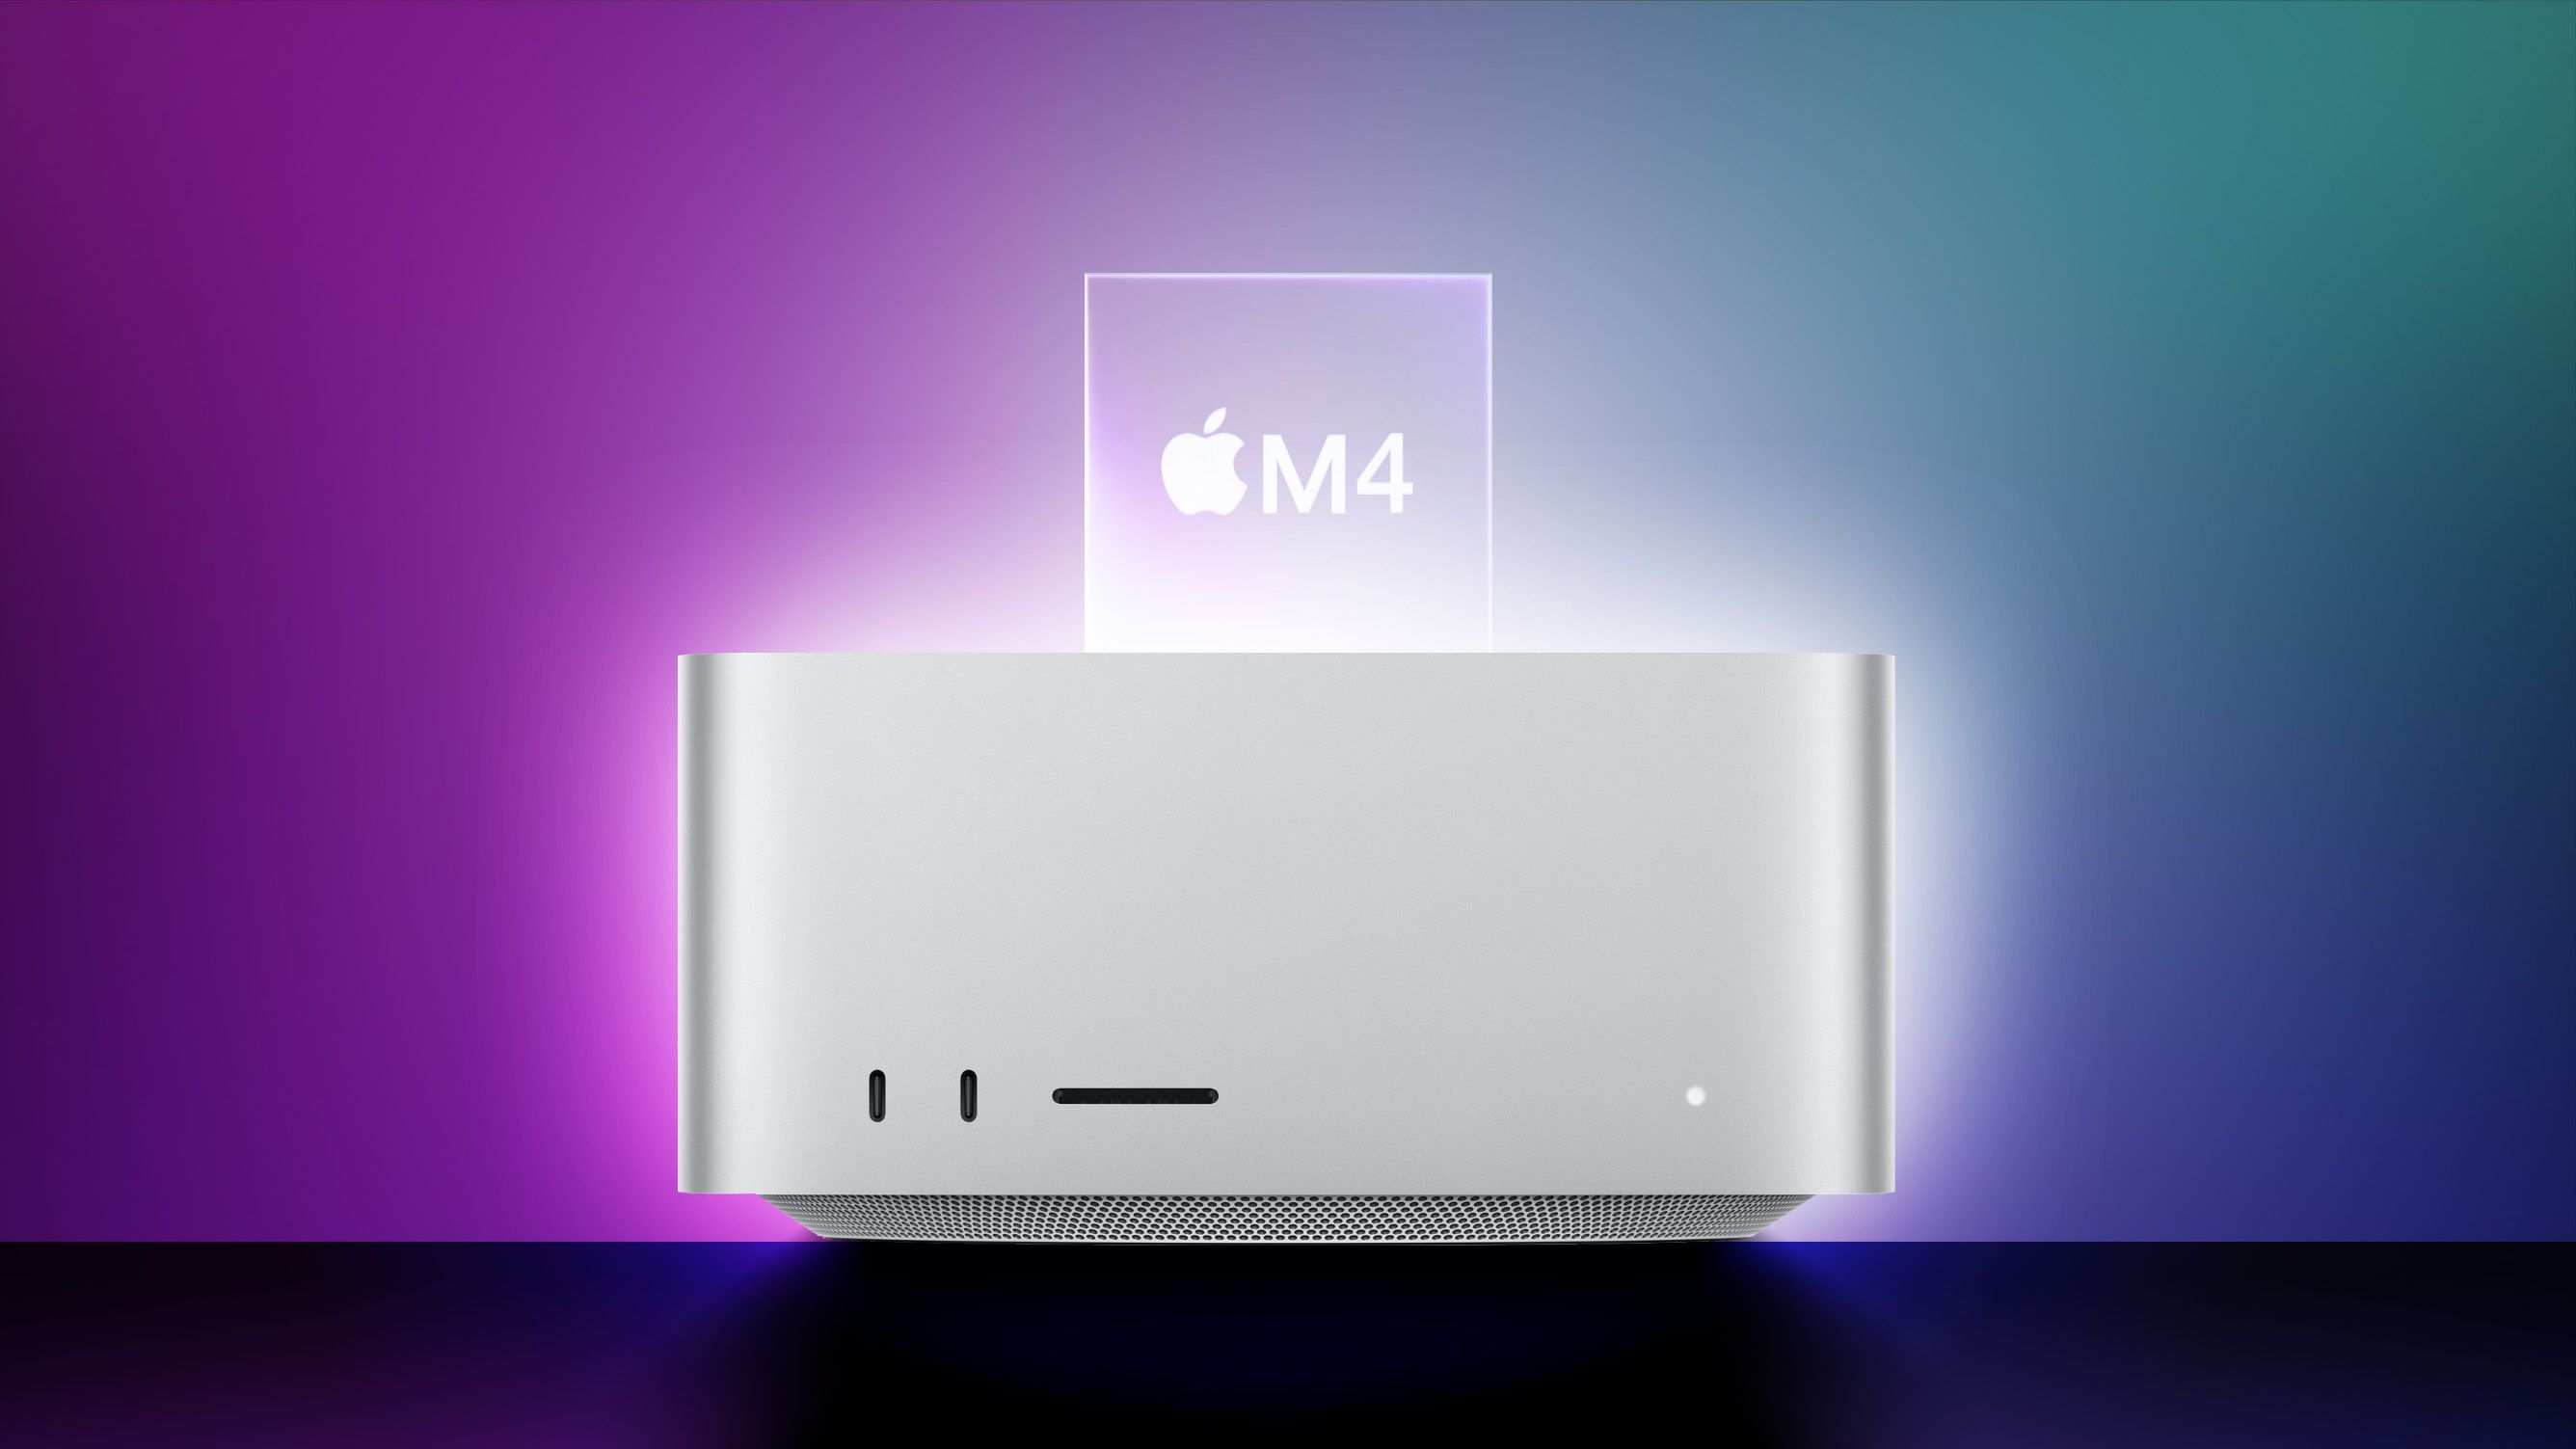 Apple M4 Mac Studio: Was wir bisher wissen